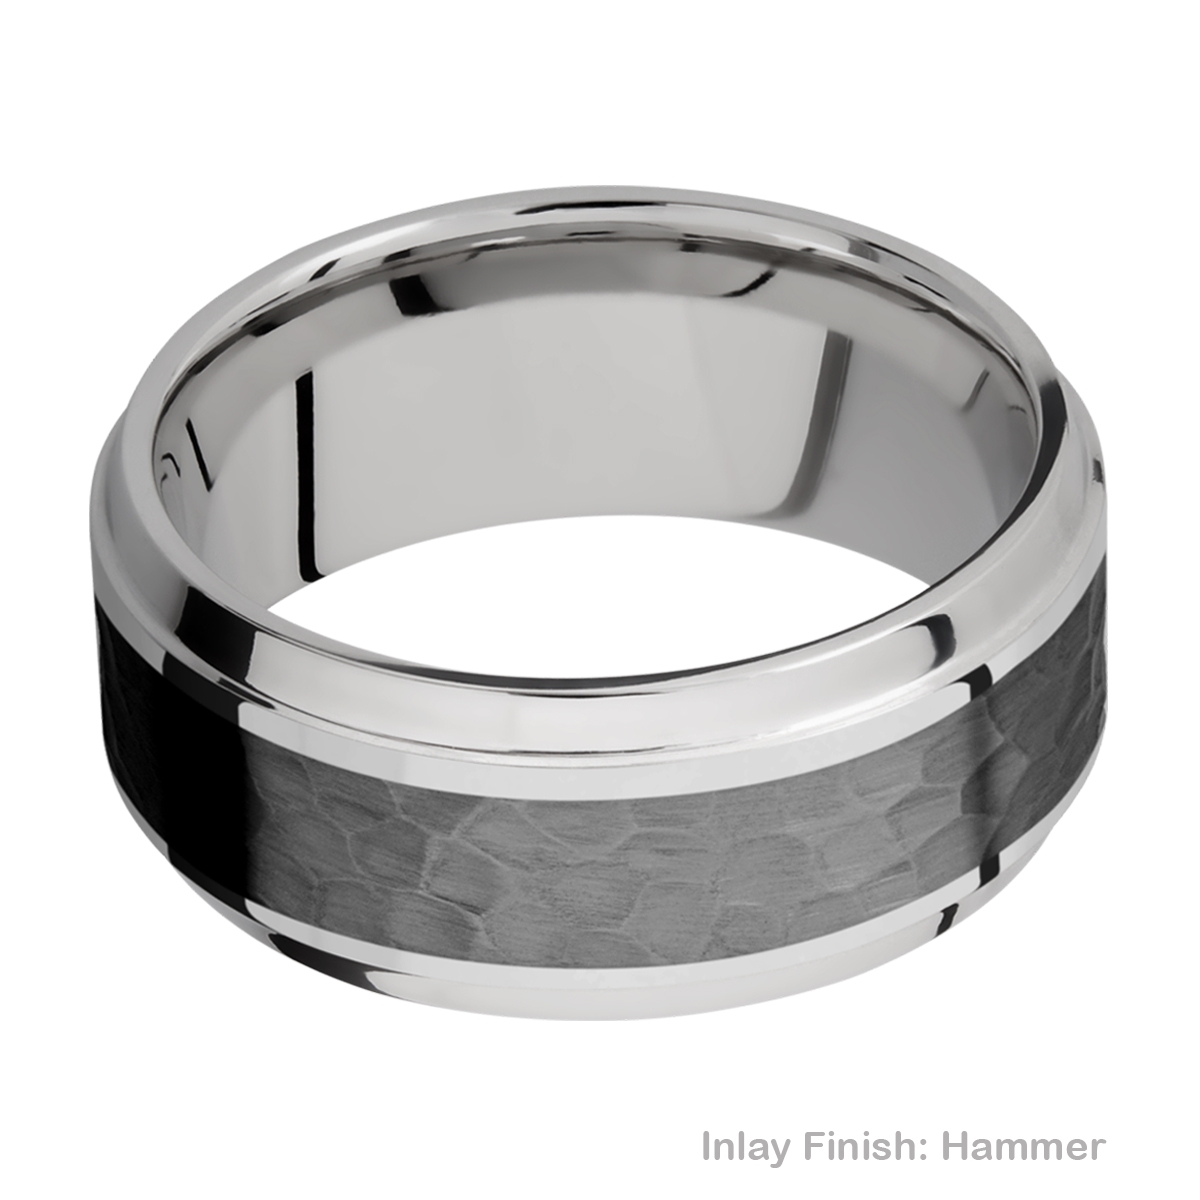 Lashbrook PF9B15(S)/ZIRCONIUM Titanium Wedding Ring or Band